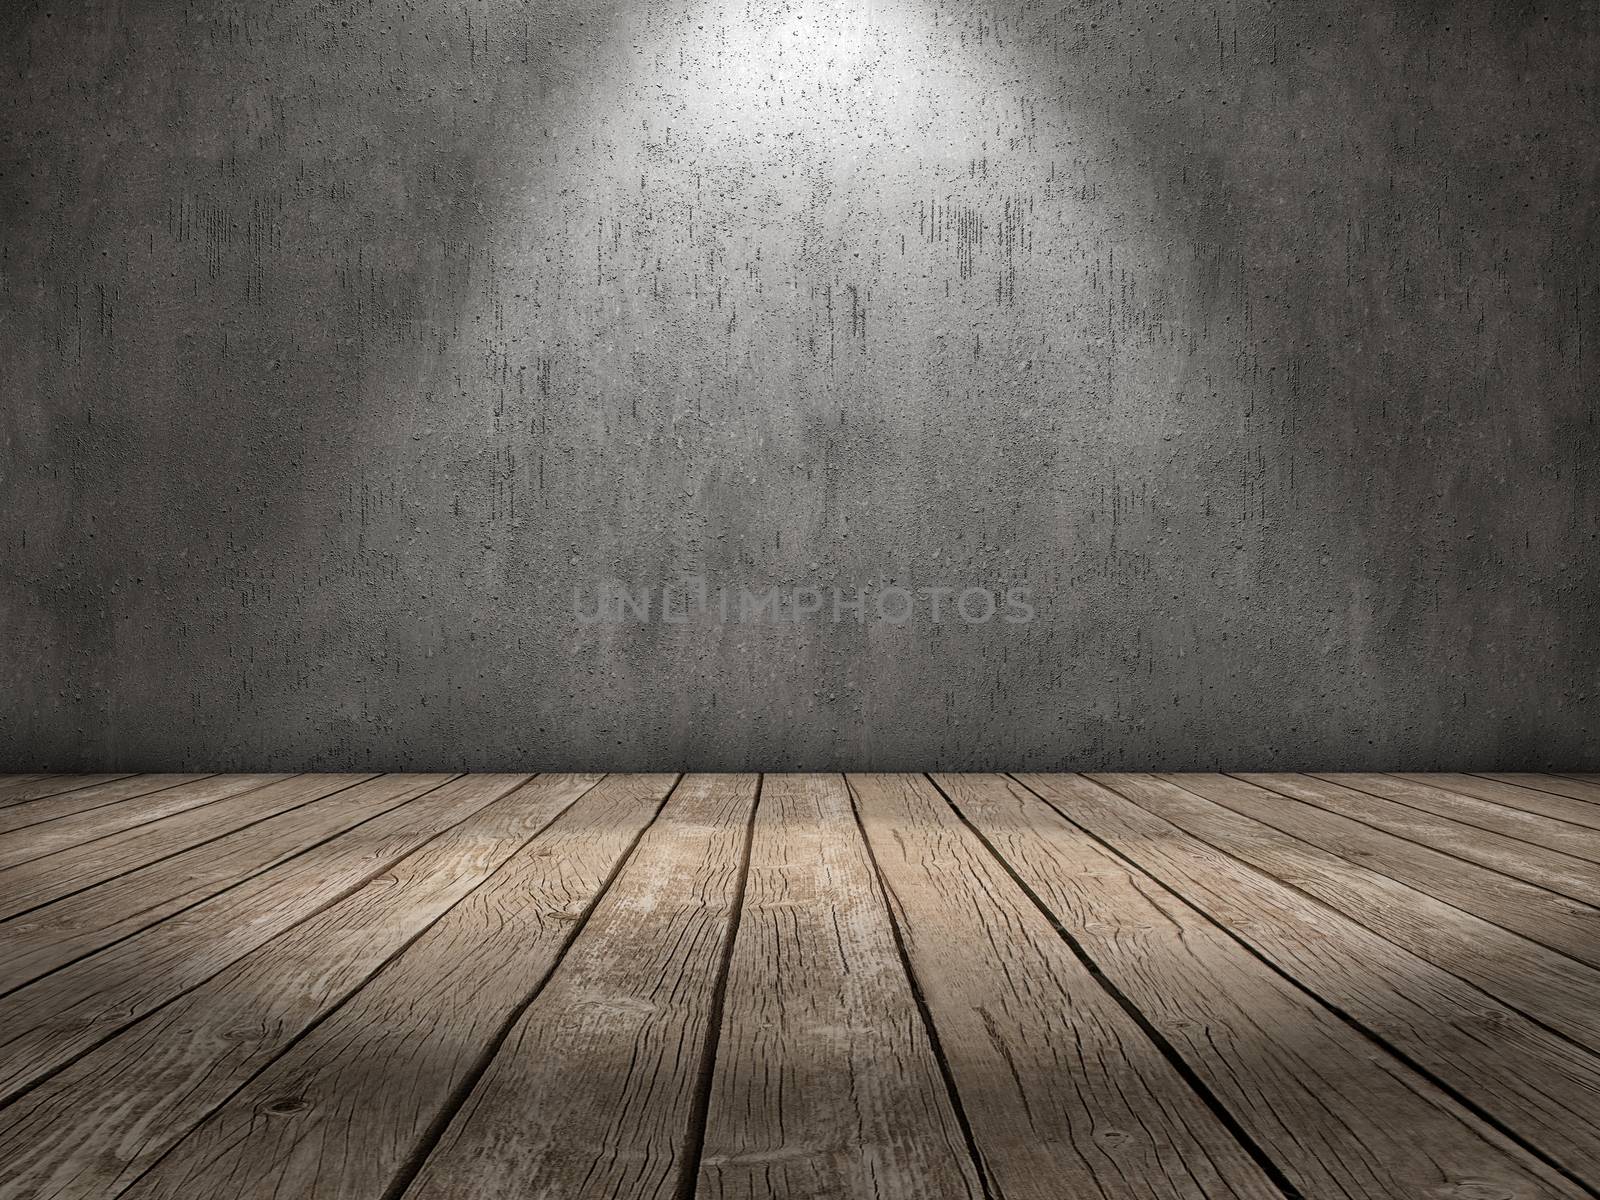 Spot light wood floor by dynamicfoto